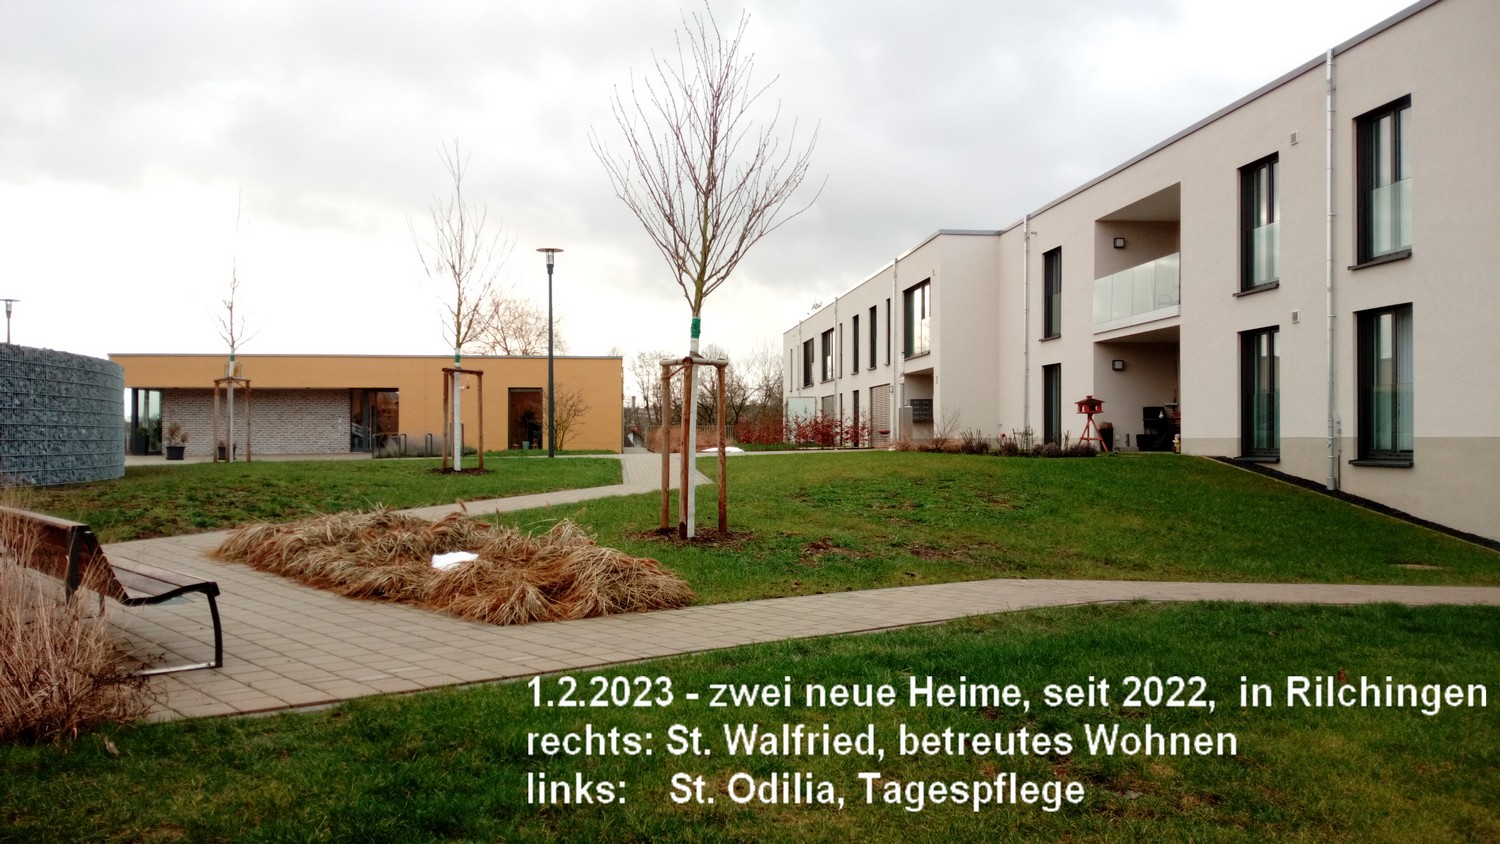 Heime St.Walfried, betreutes Wohnen und St.Odilia, Tagespflege in Rilchingen, seit 2020